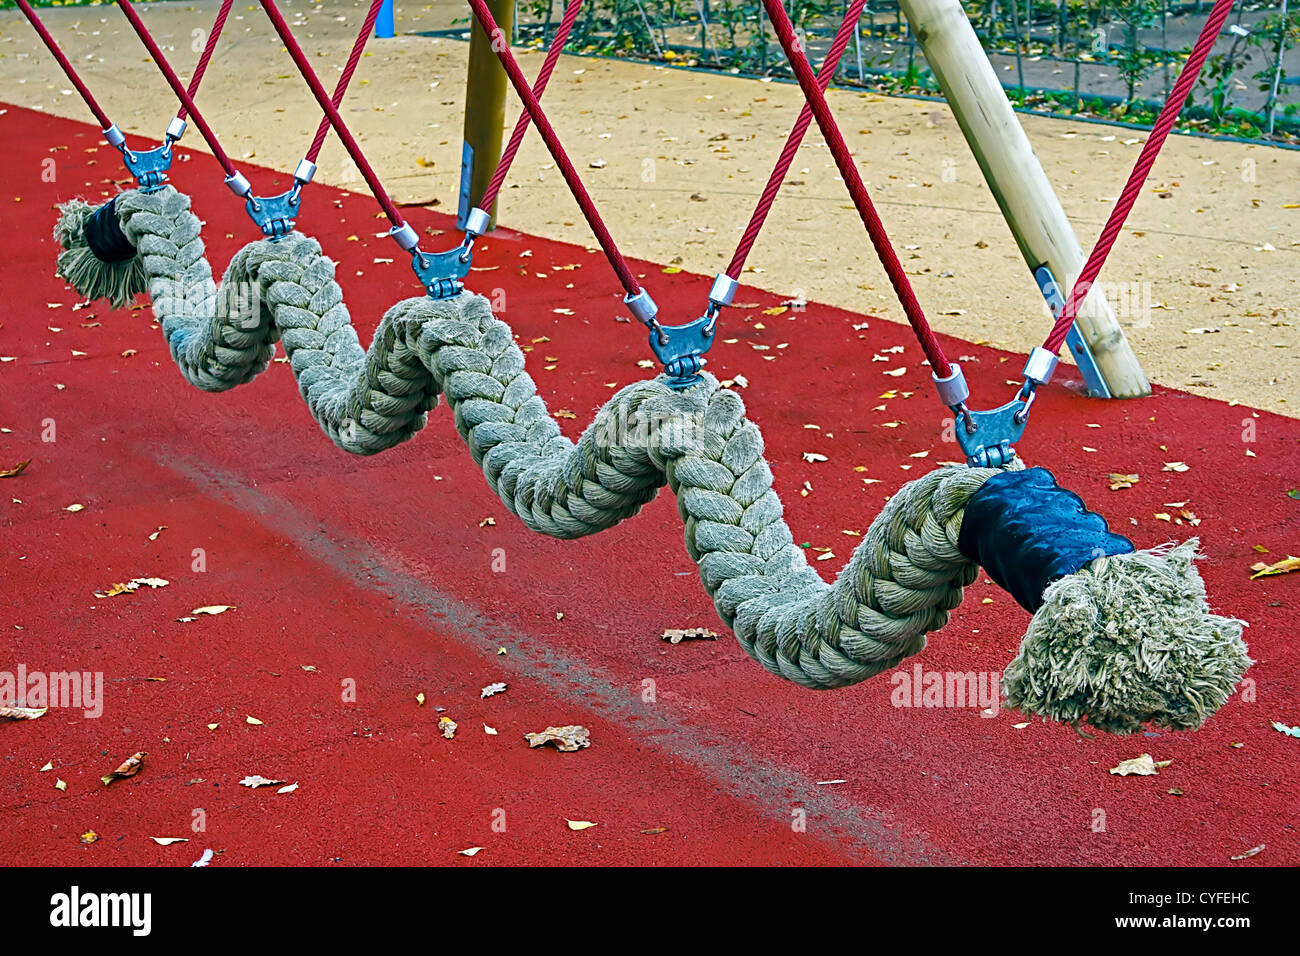 Juguete de cuerda serpiente situado en un parque de diversiones para niños. Foto de stock